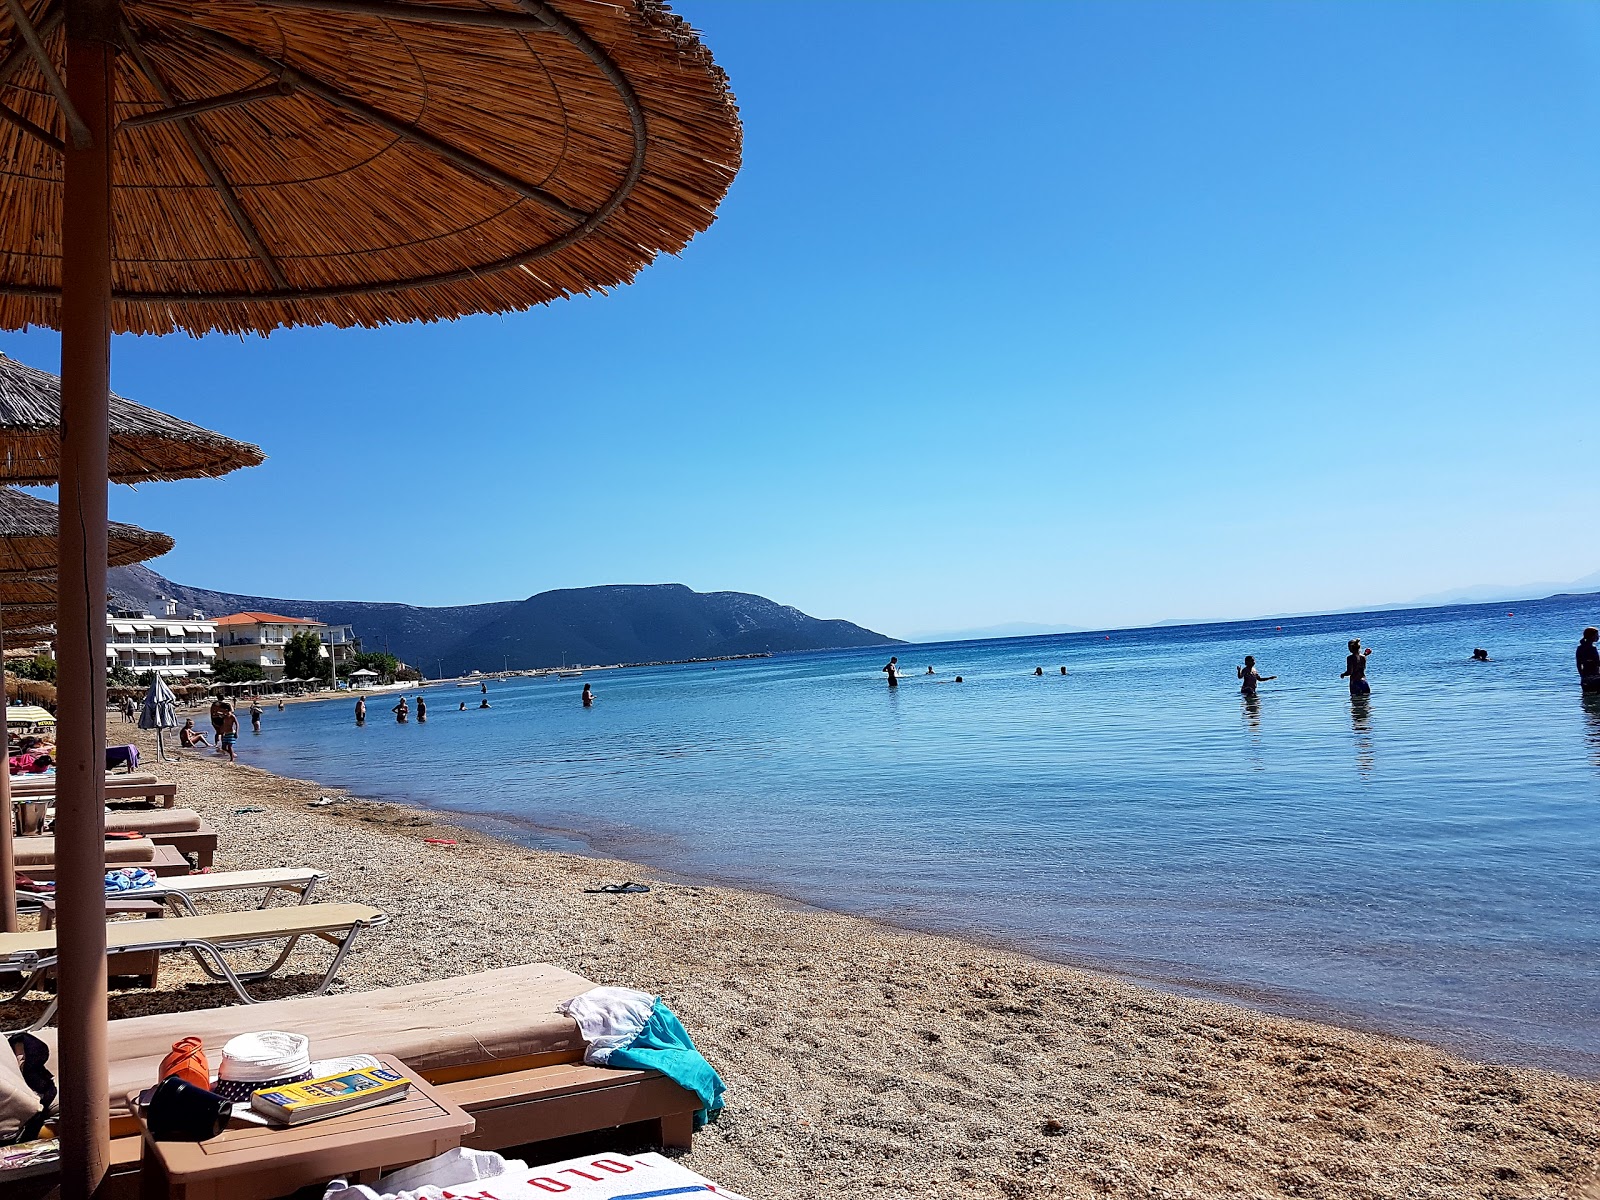 Foto af Figias beach - populært sted blandt afslapningskendere